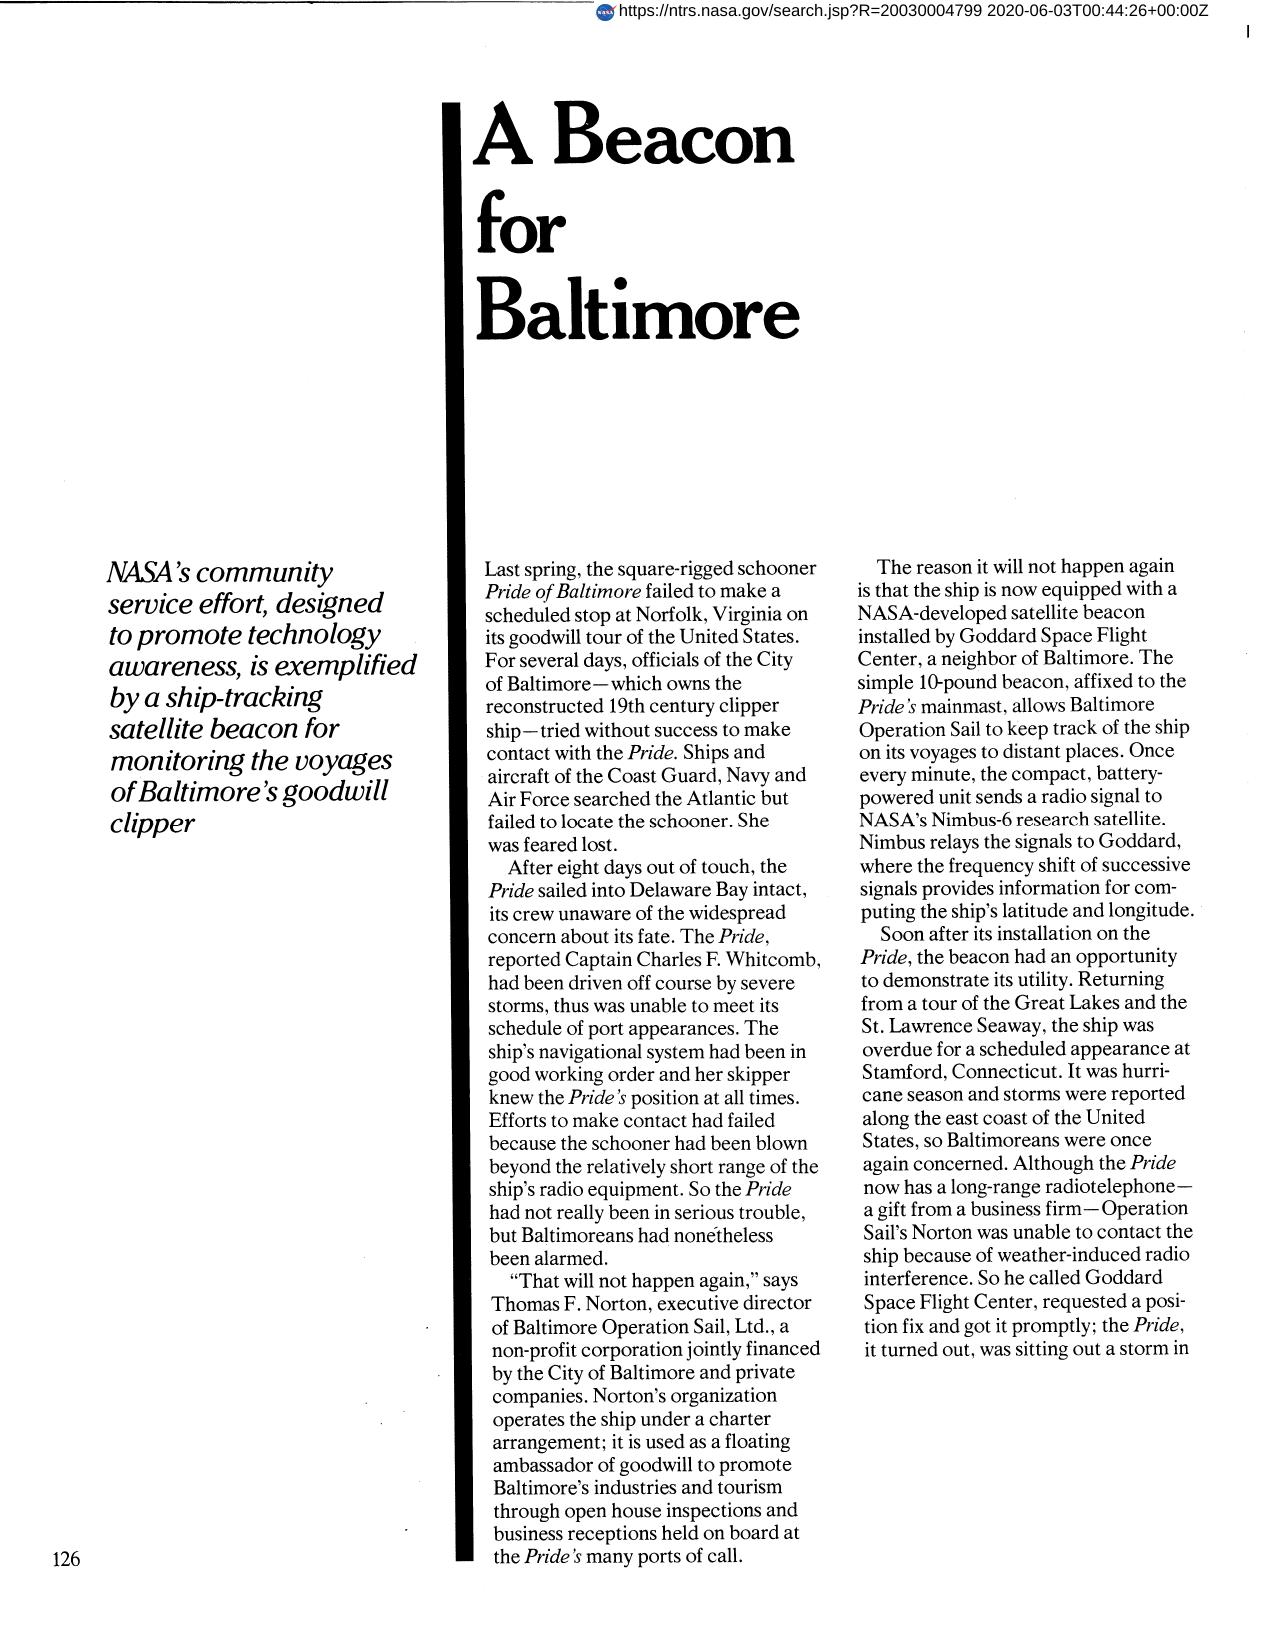 A Beacon for Baltimore